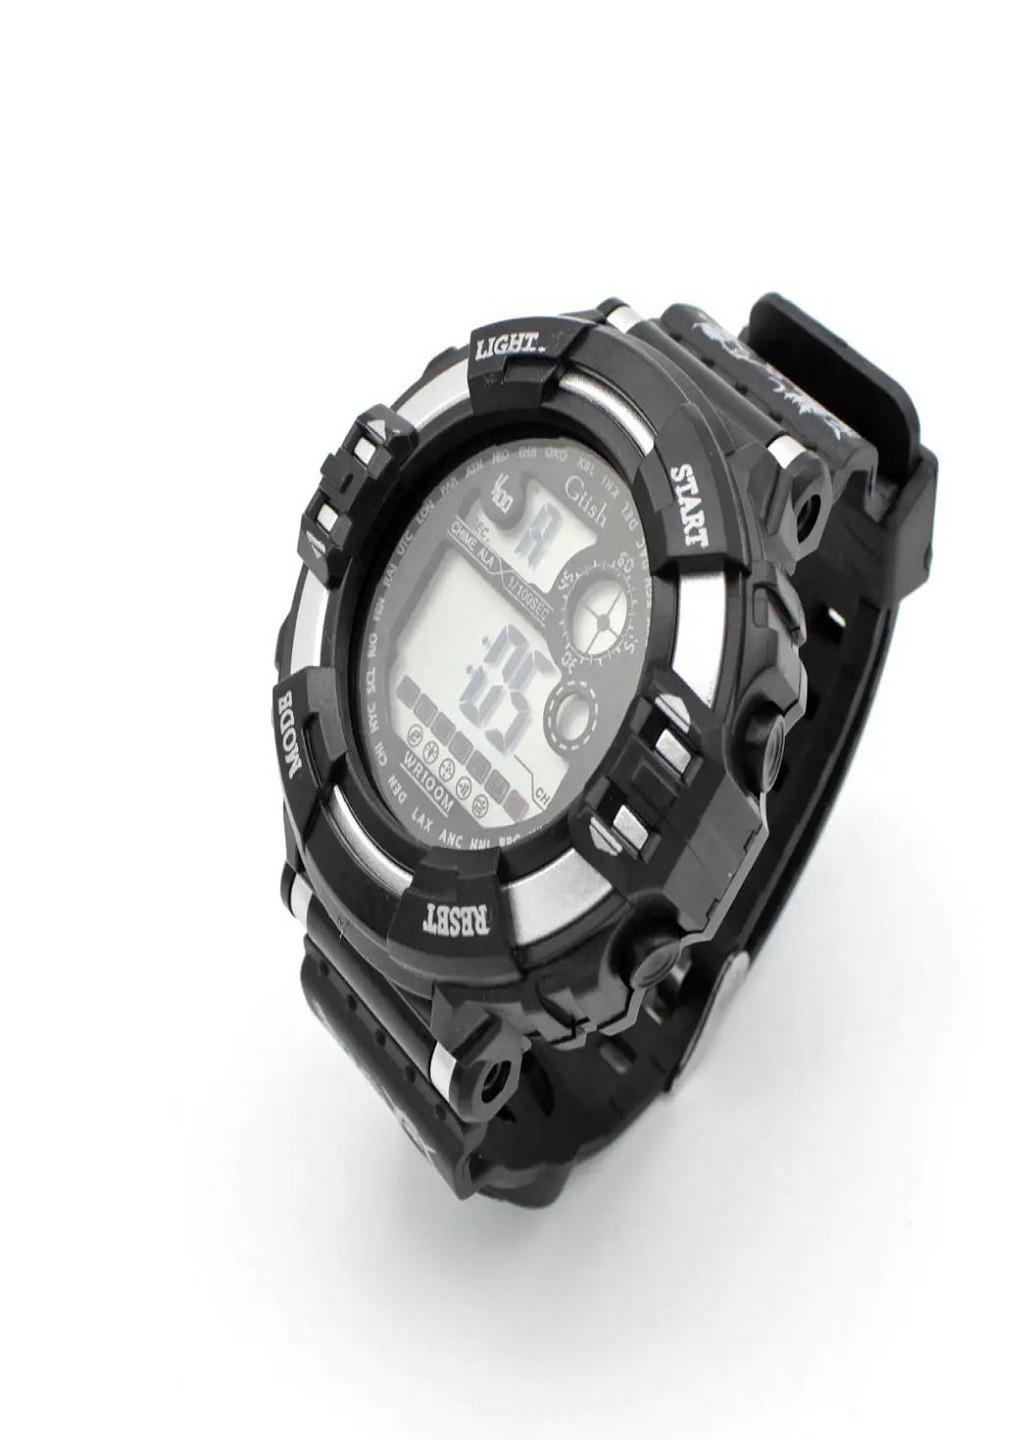 Универсальные водонепроницаемые наручные часы с компасом Giish KL Черный с Серым VTech (259040259)